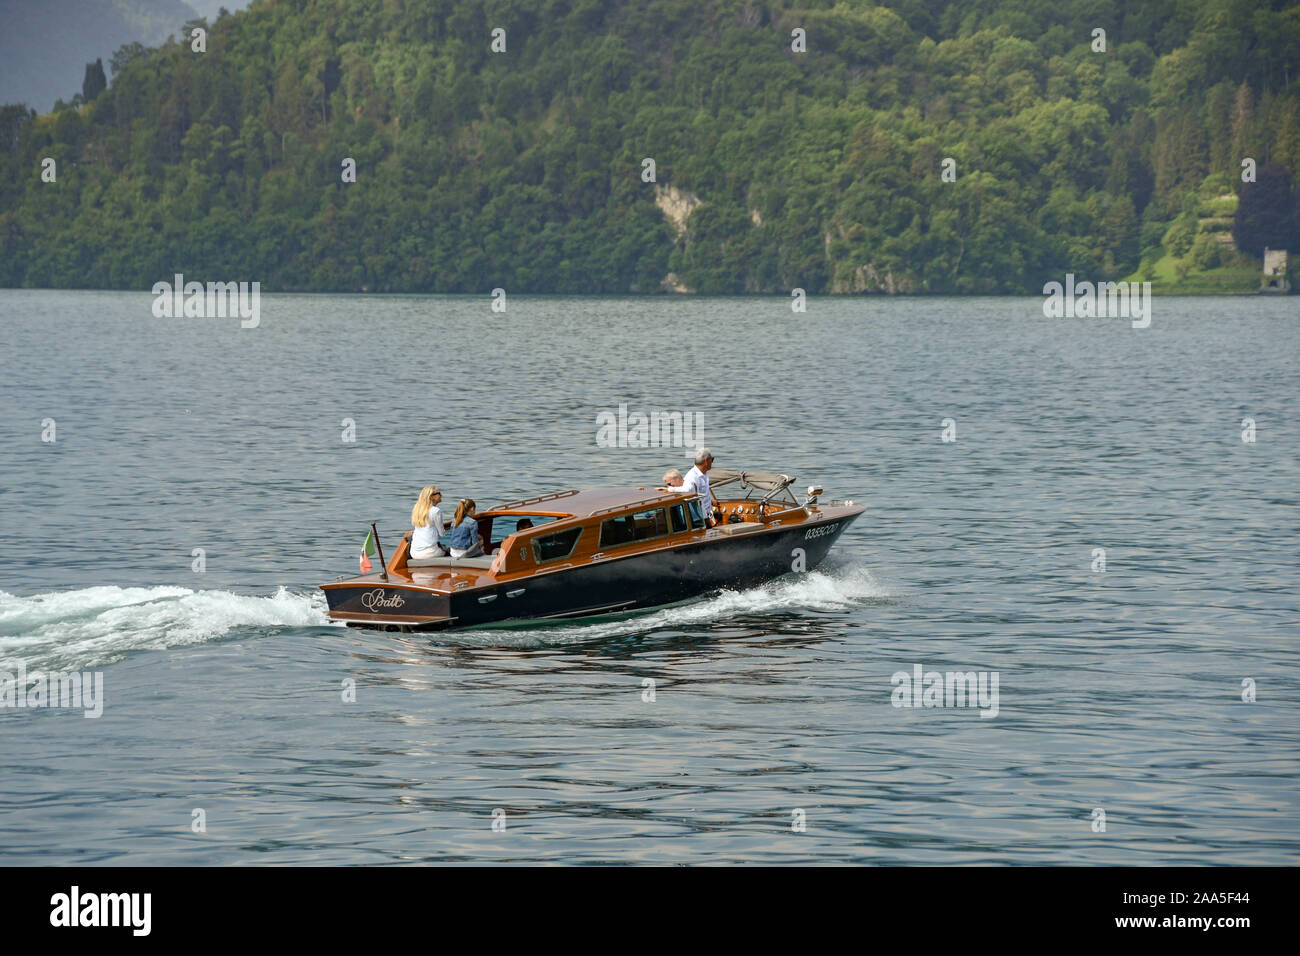 Le lac de Côme, Italie - Juin 2019 : famille sur un bateau à moteur privé sur le lac de Côme Banque D'Images